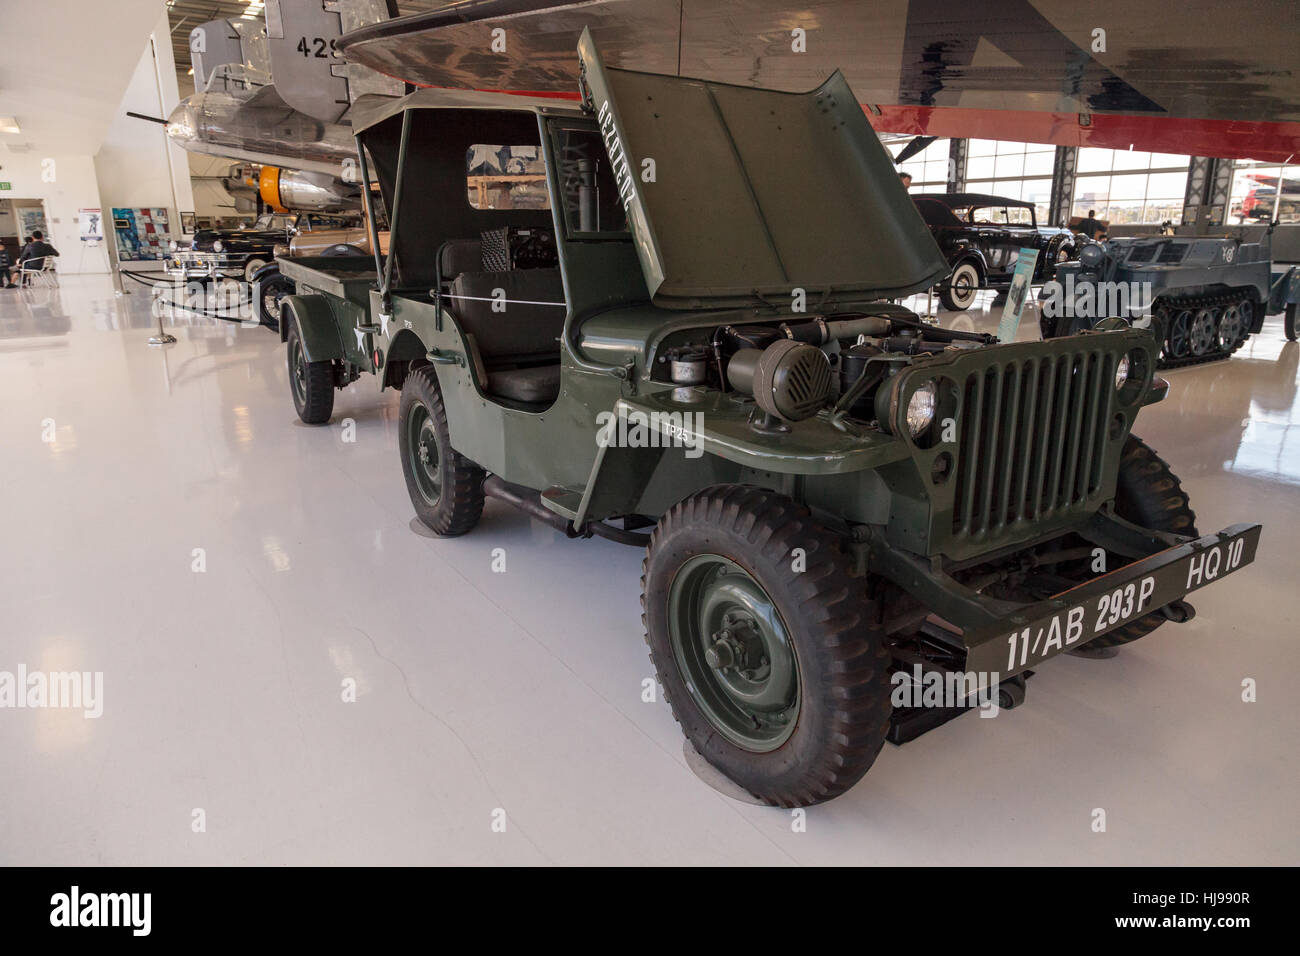 Santa Ana, CA, USA - January 21, 2017: Dark green 1943 Ford GPW Military Jeep displayed at the Lyon Air Museum in Santa Ana, Cal Stock Photo